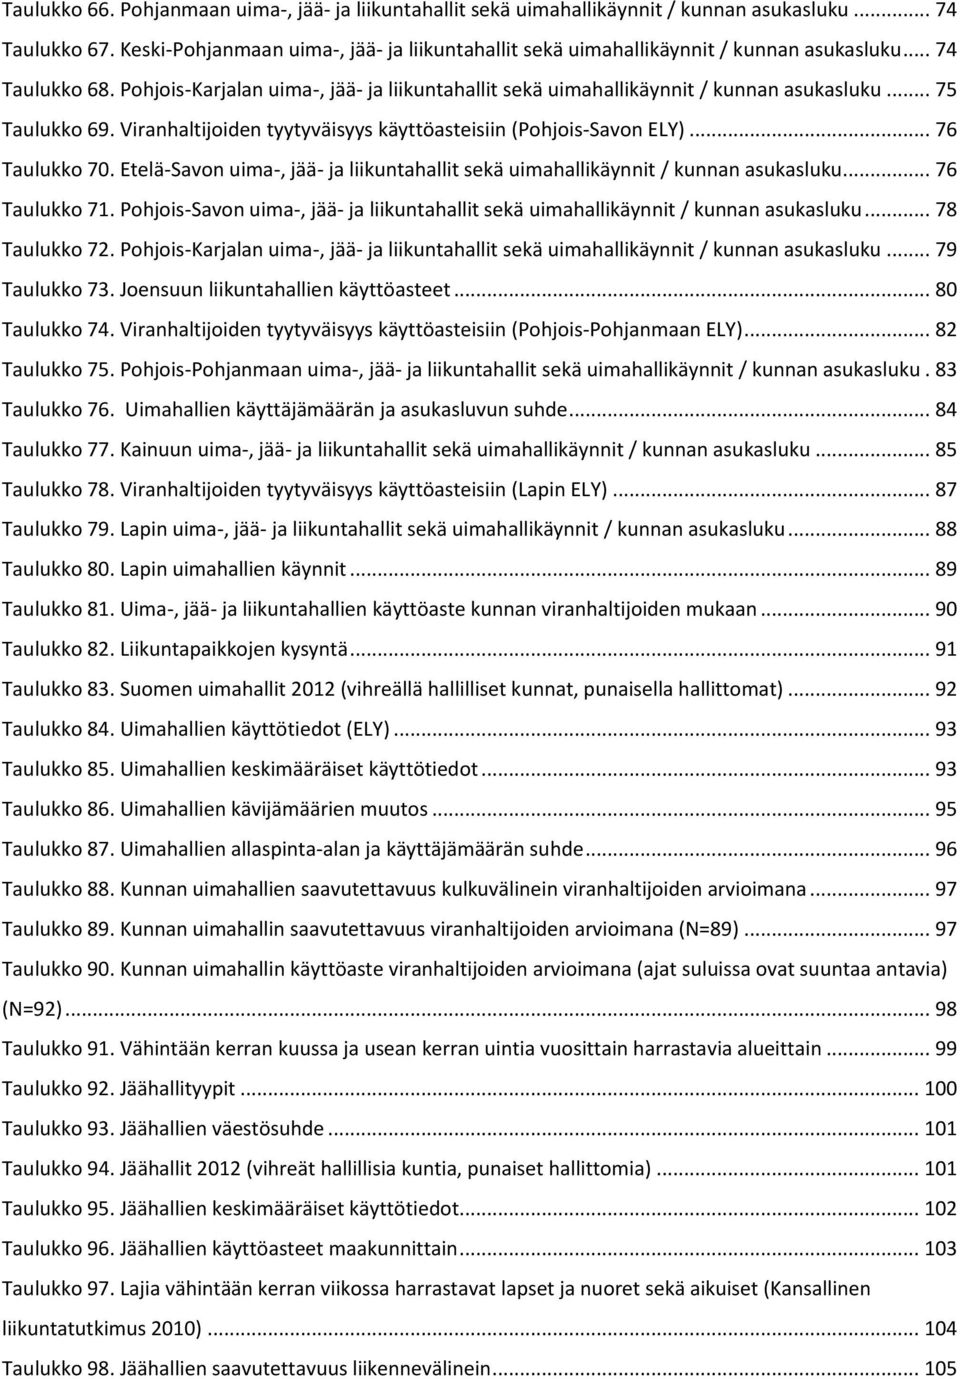 .. 75 Taulukko 69. Viranhaltijoiden tyytyväisyys käyttöasteisiin (Pohjois-Savon ELY)... 76 Taulukko 70. Etelä-Savon uima-, jää- ja liikuntahallit sekä uimahallikäynnit / kunnan asukasluku.